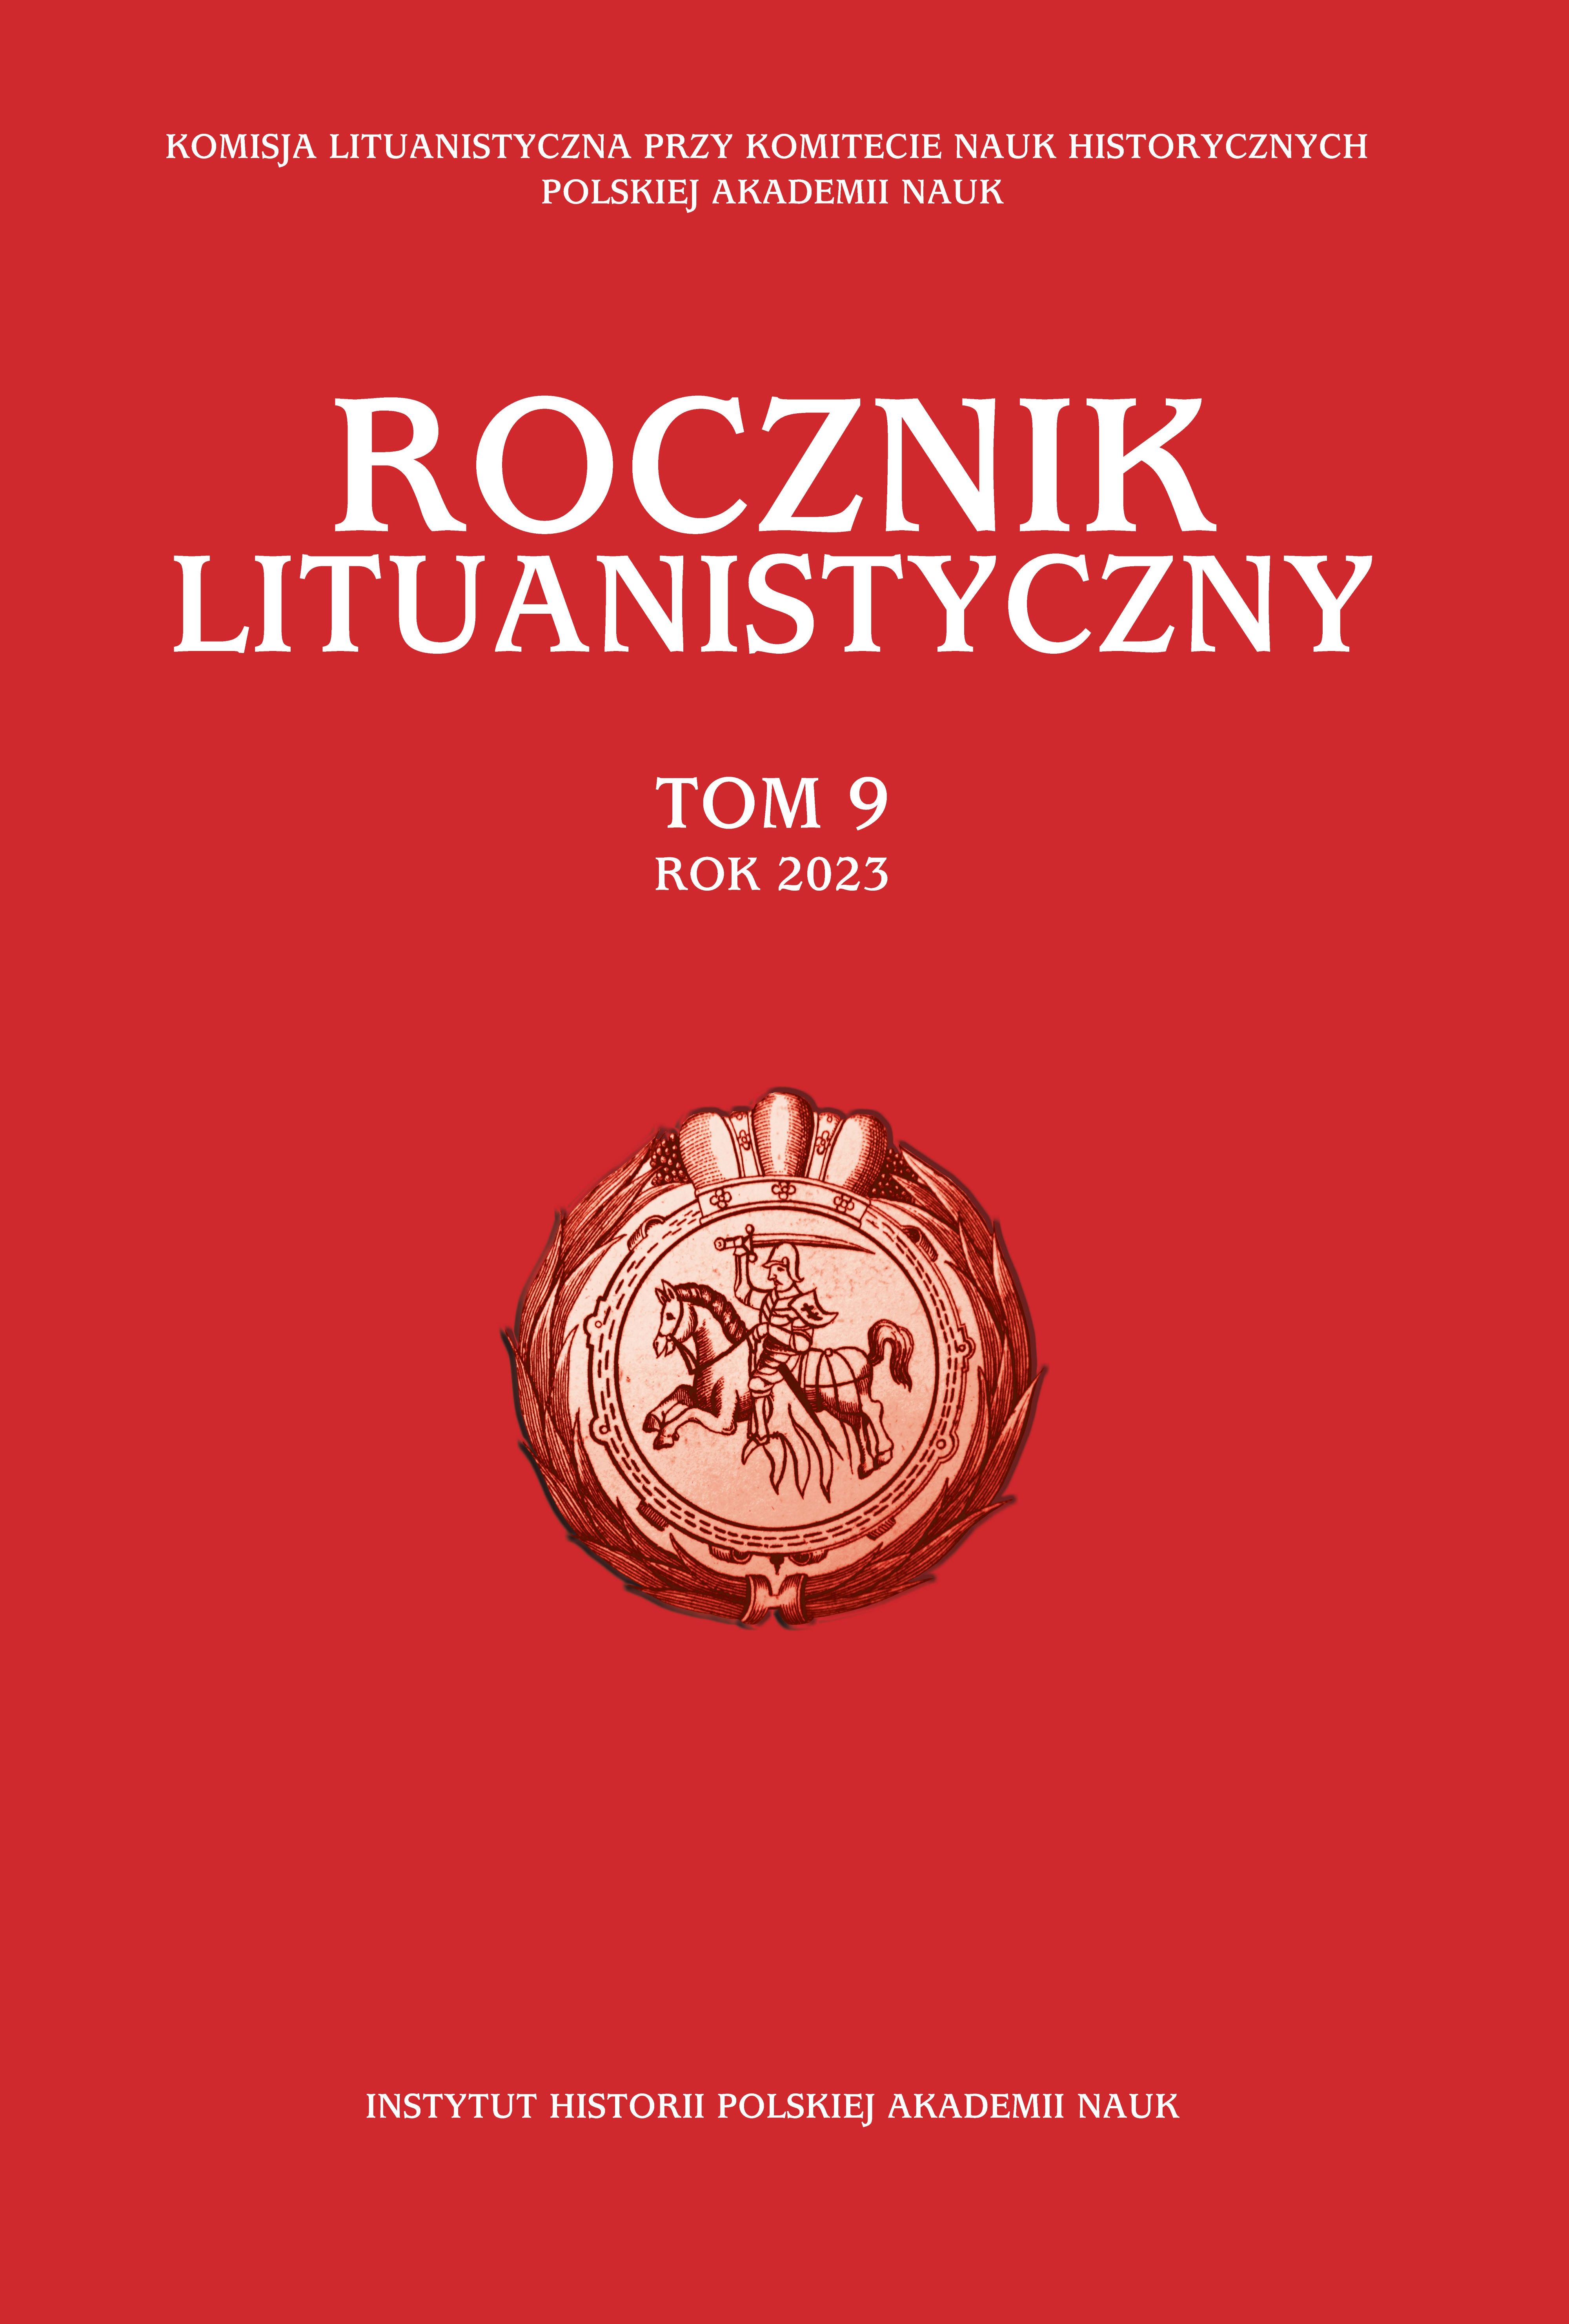 Rocznik Lituanistyczny